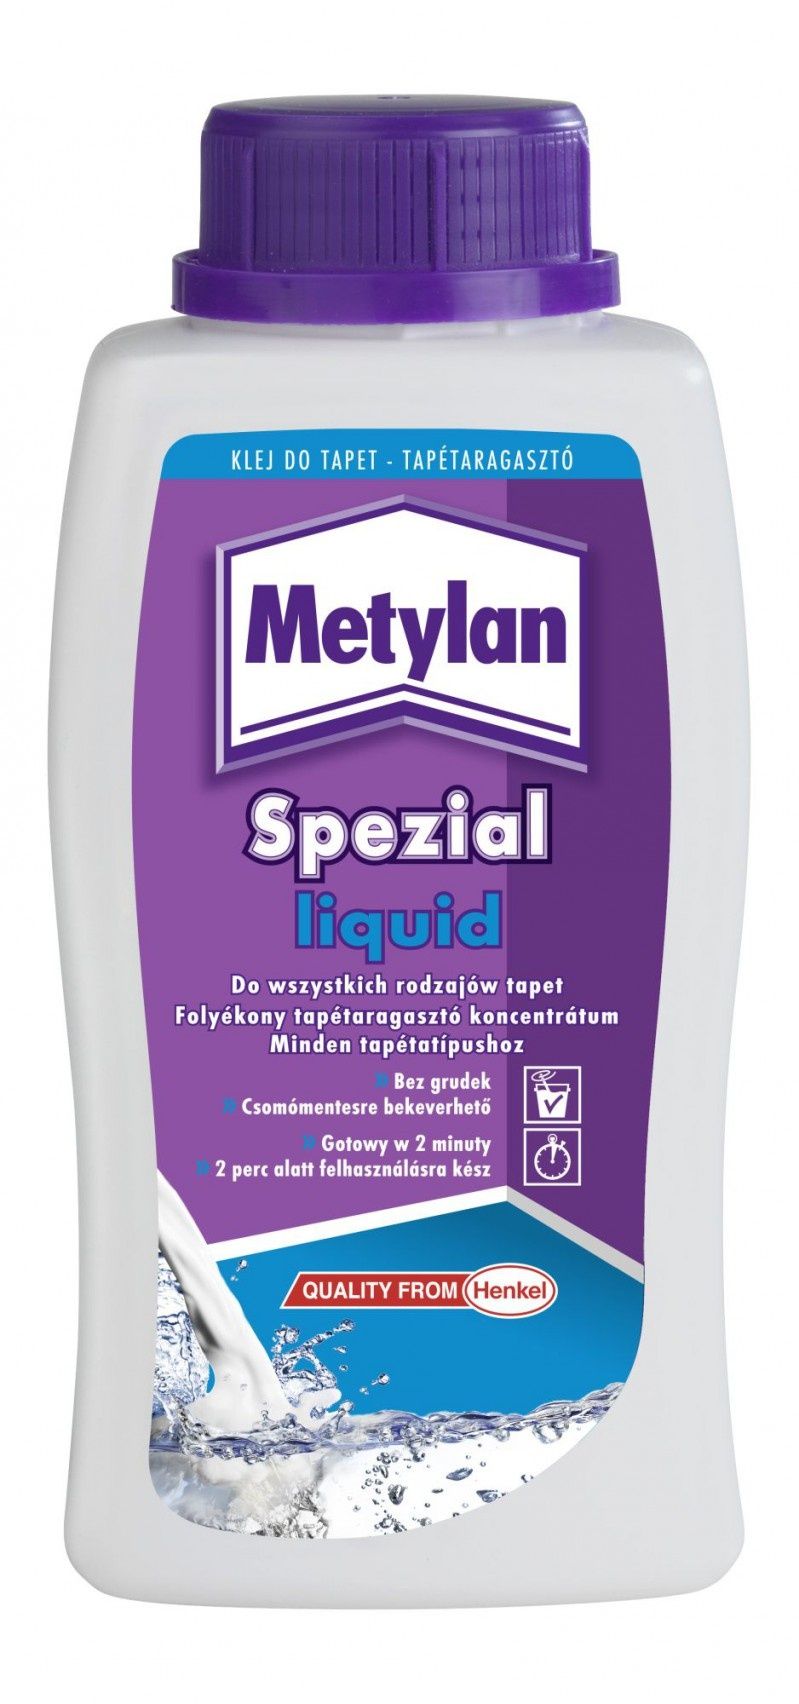 Metylan Spezial Liquid - uniwersalny klej do tapet